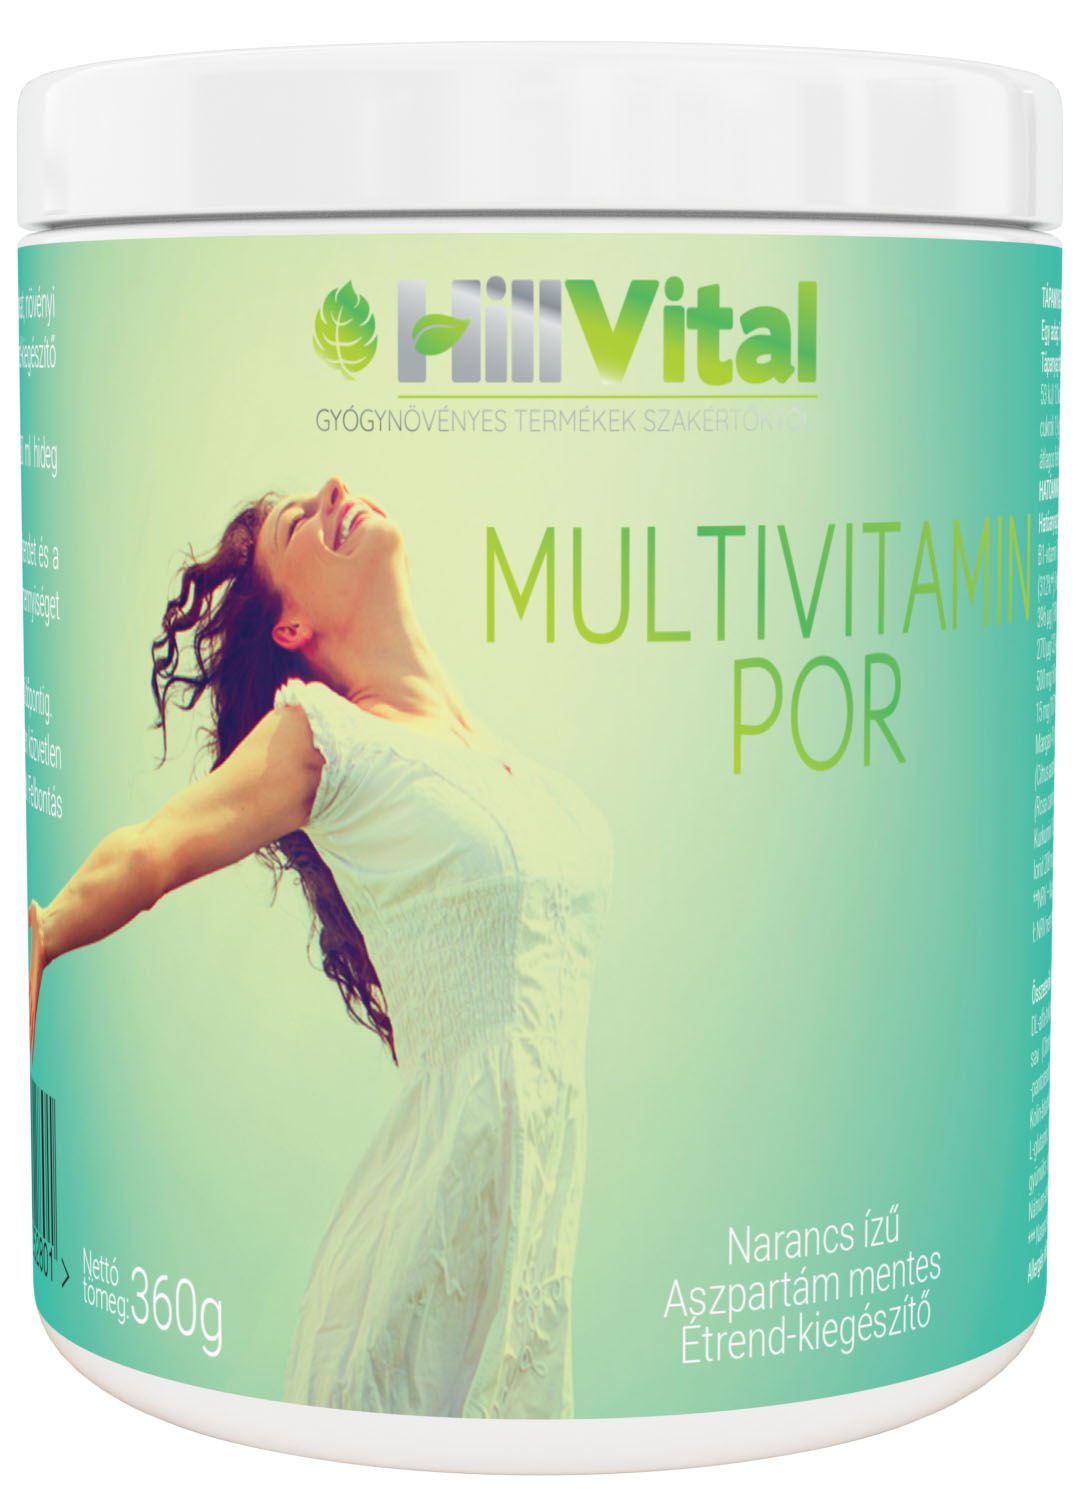 HillVital Multivitamin por